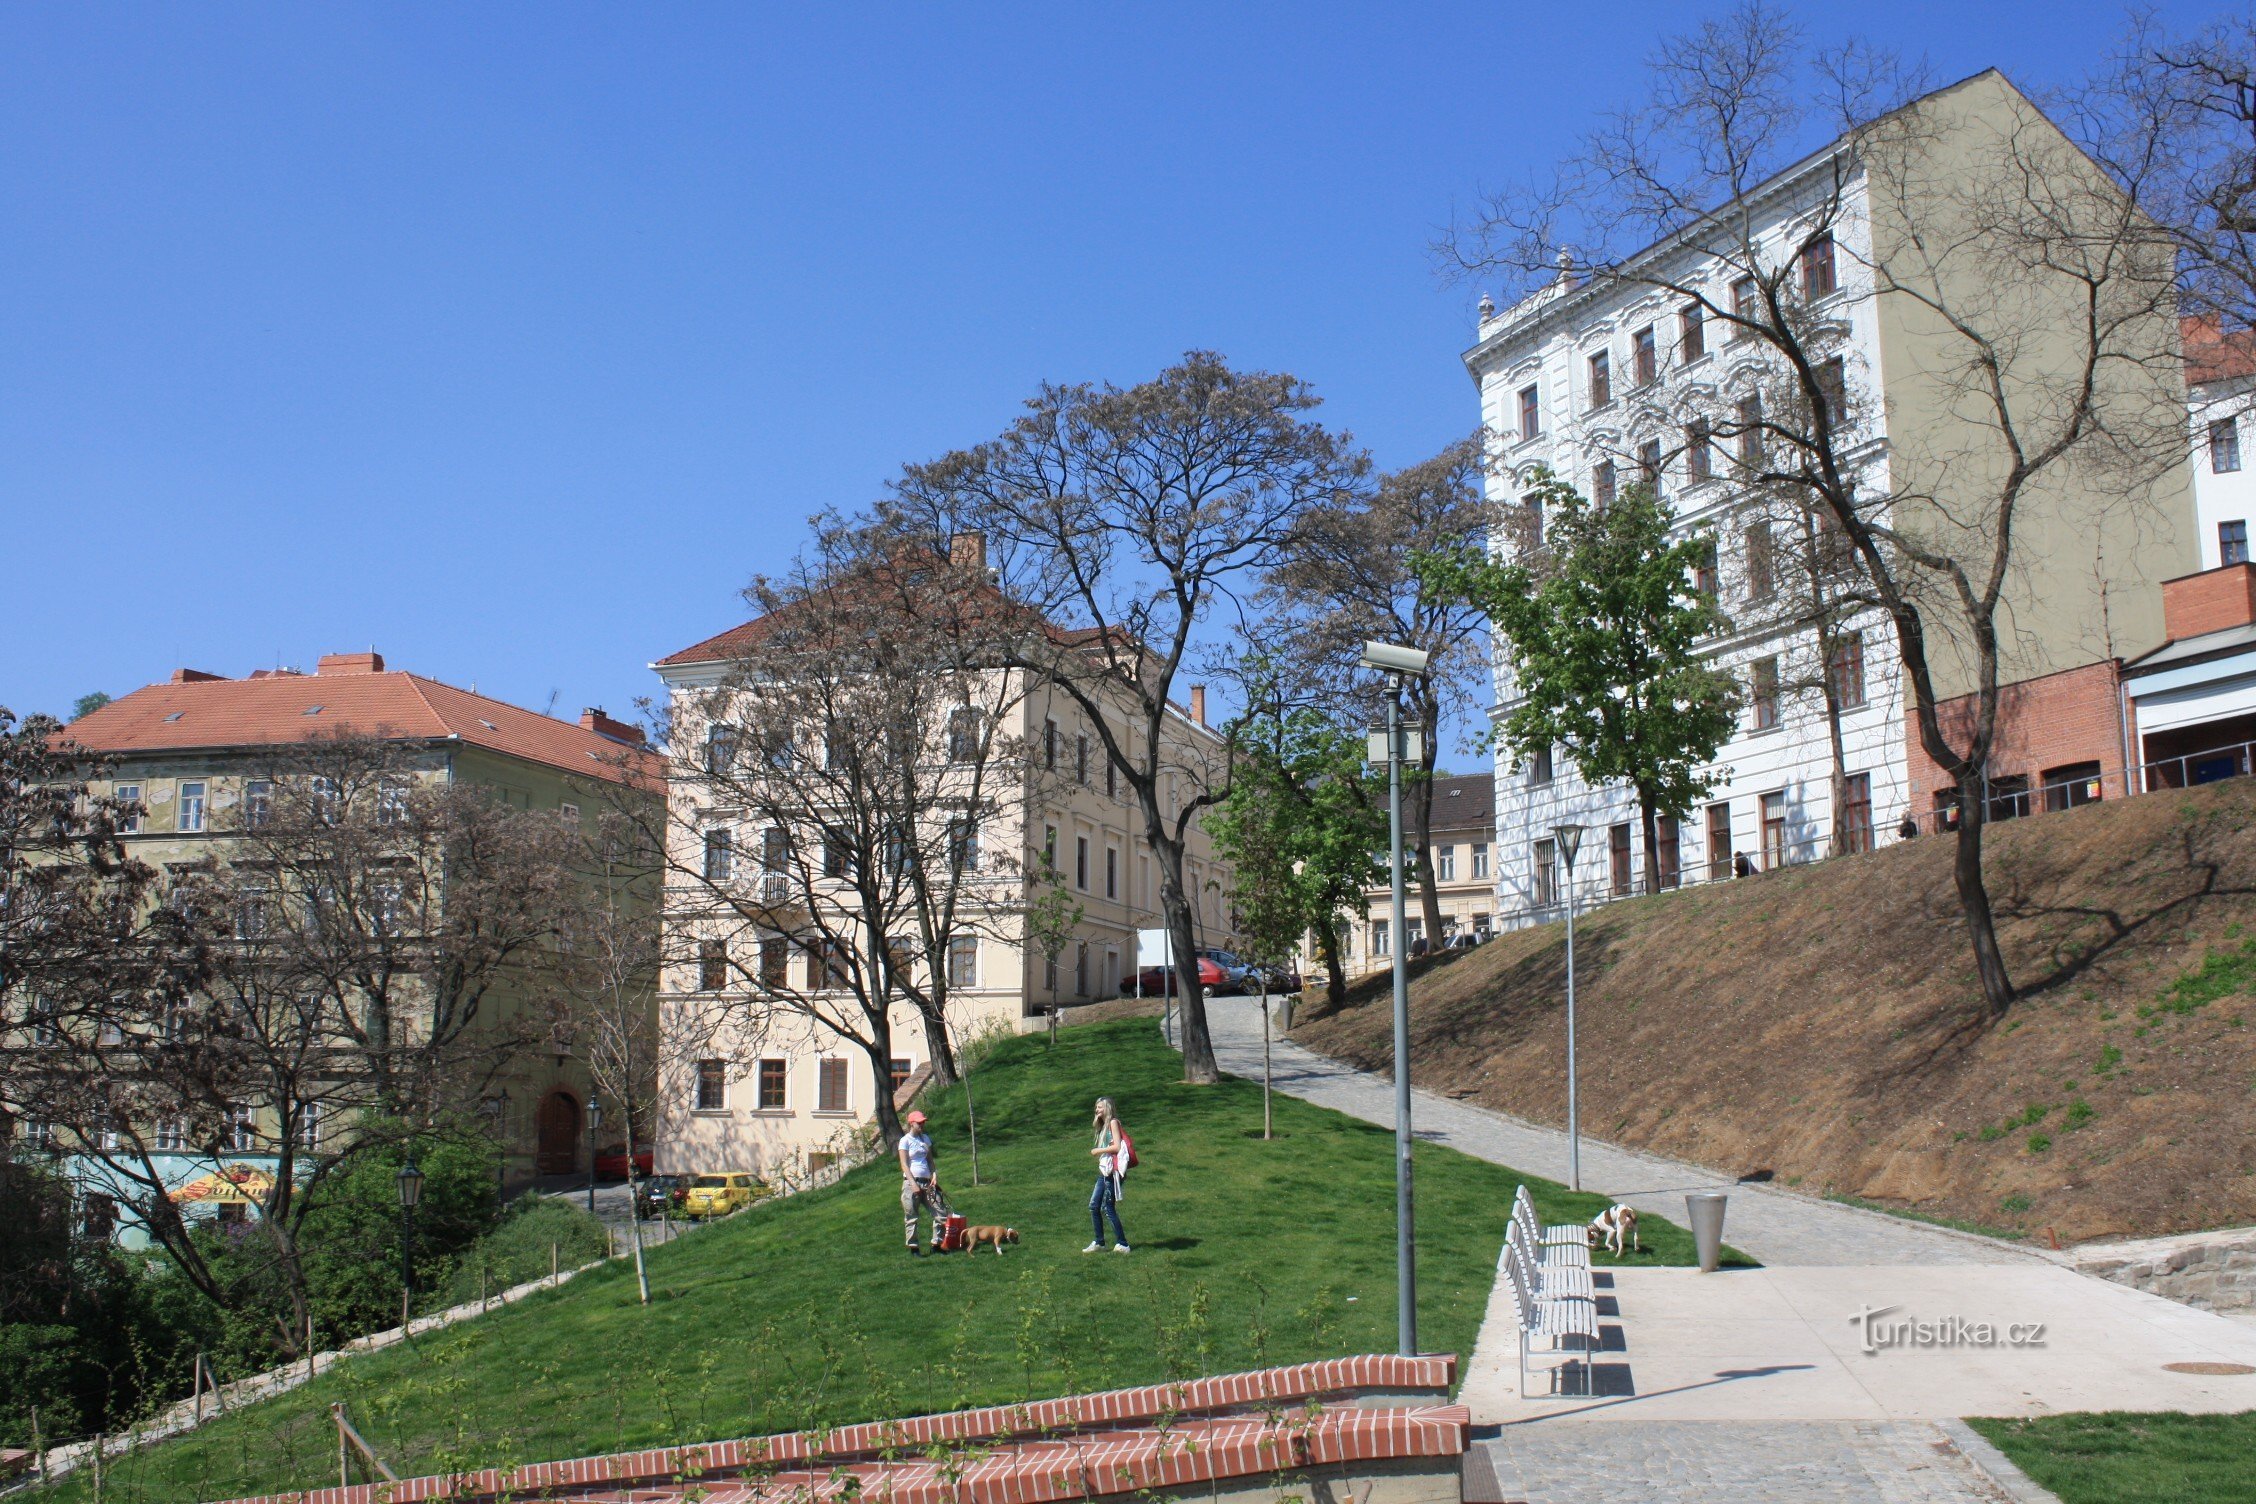 O parte din parcul Studánka revitalizat spre strada Pekařské